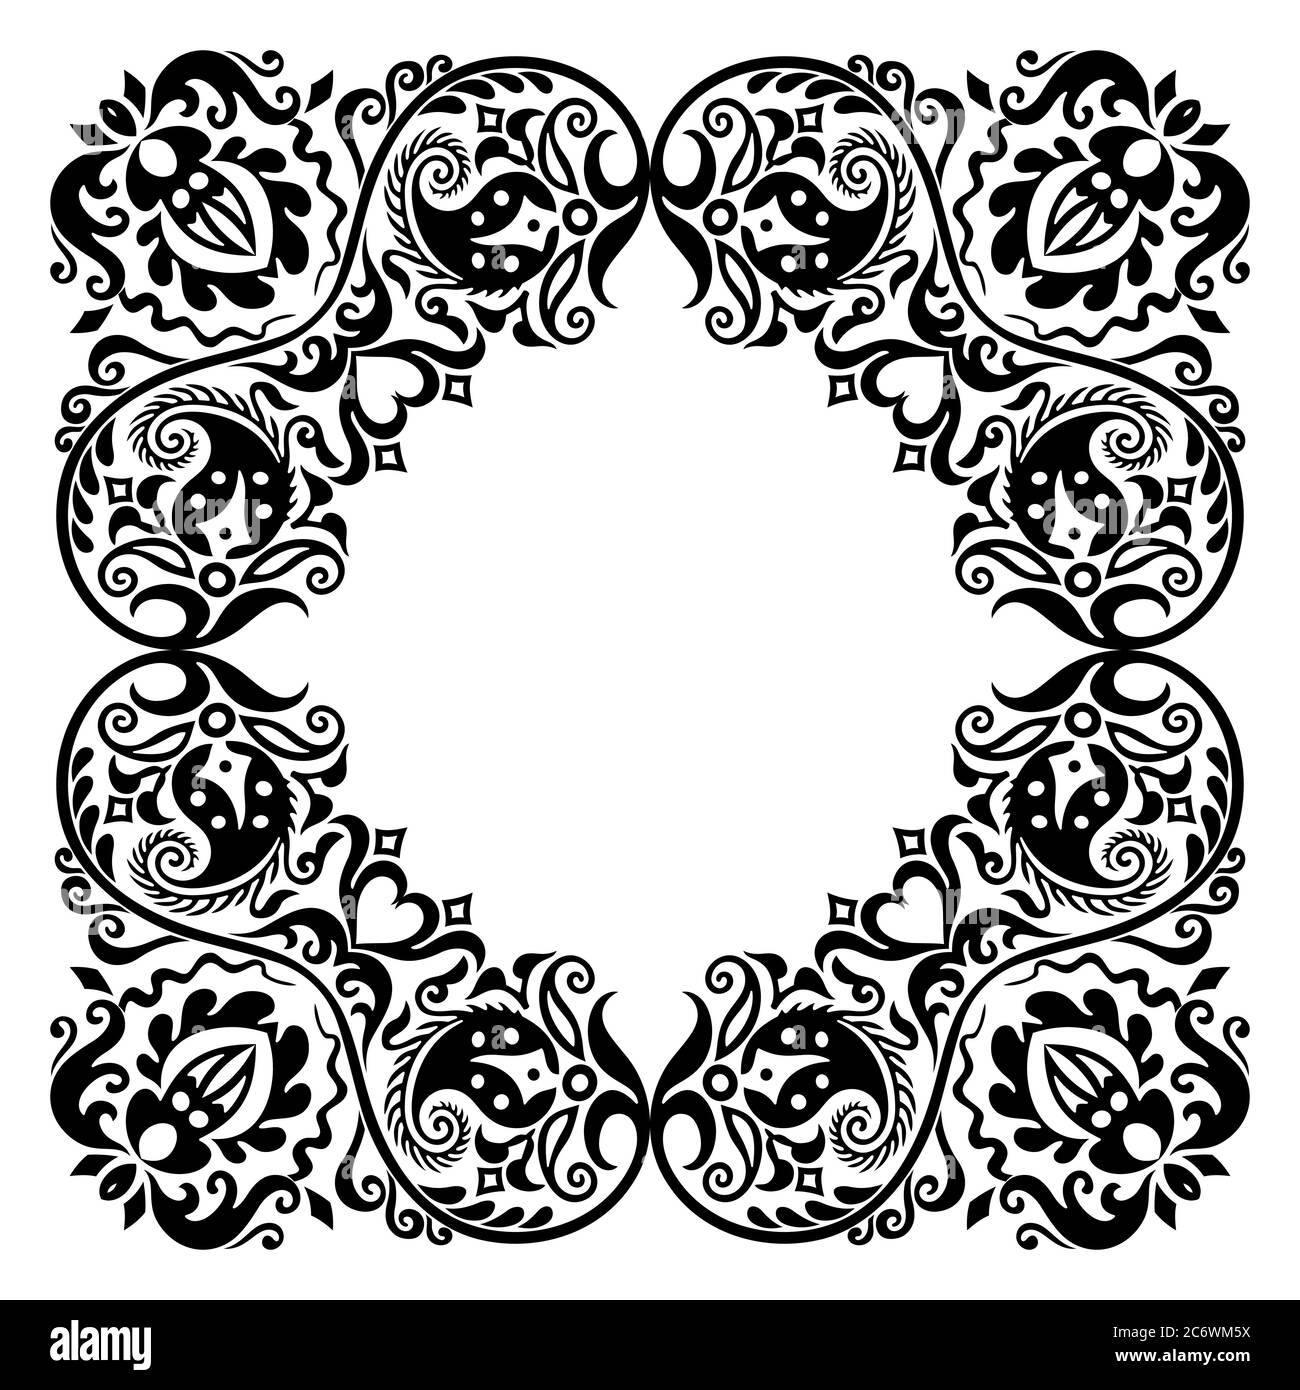 Floral hand drawn vintage border. Frame design Stock Vector Image & Art ...